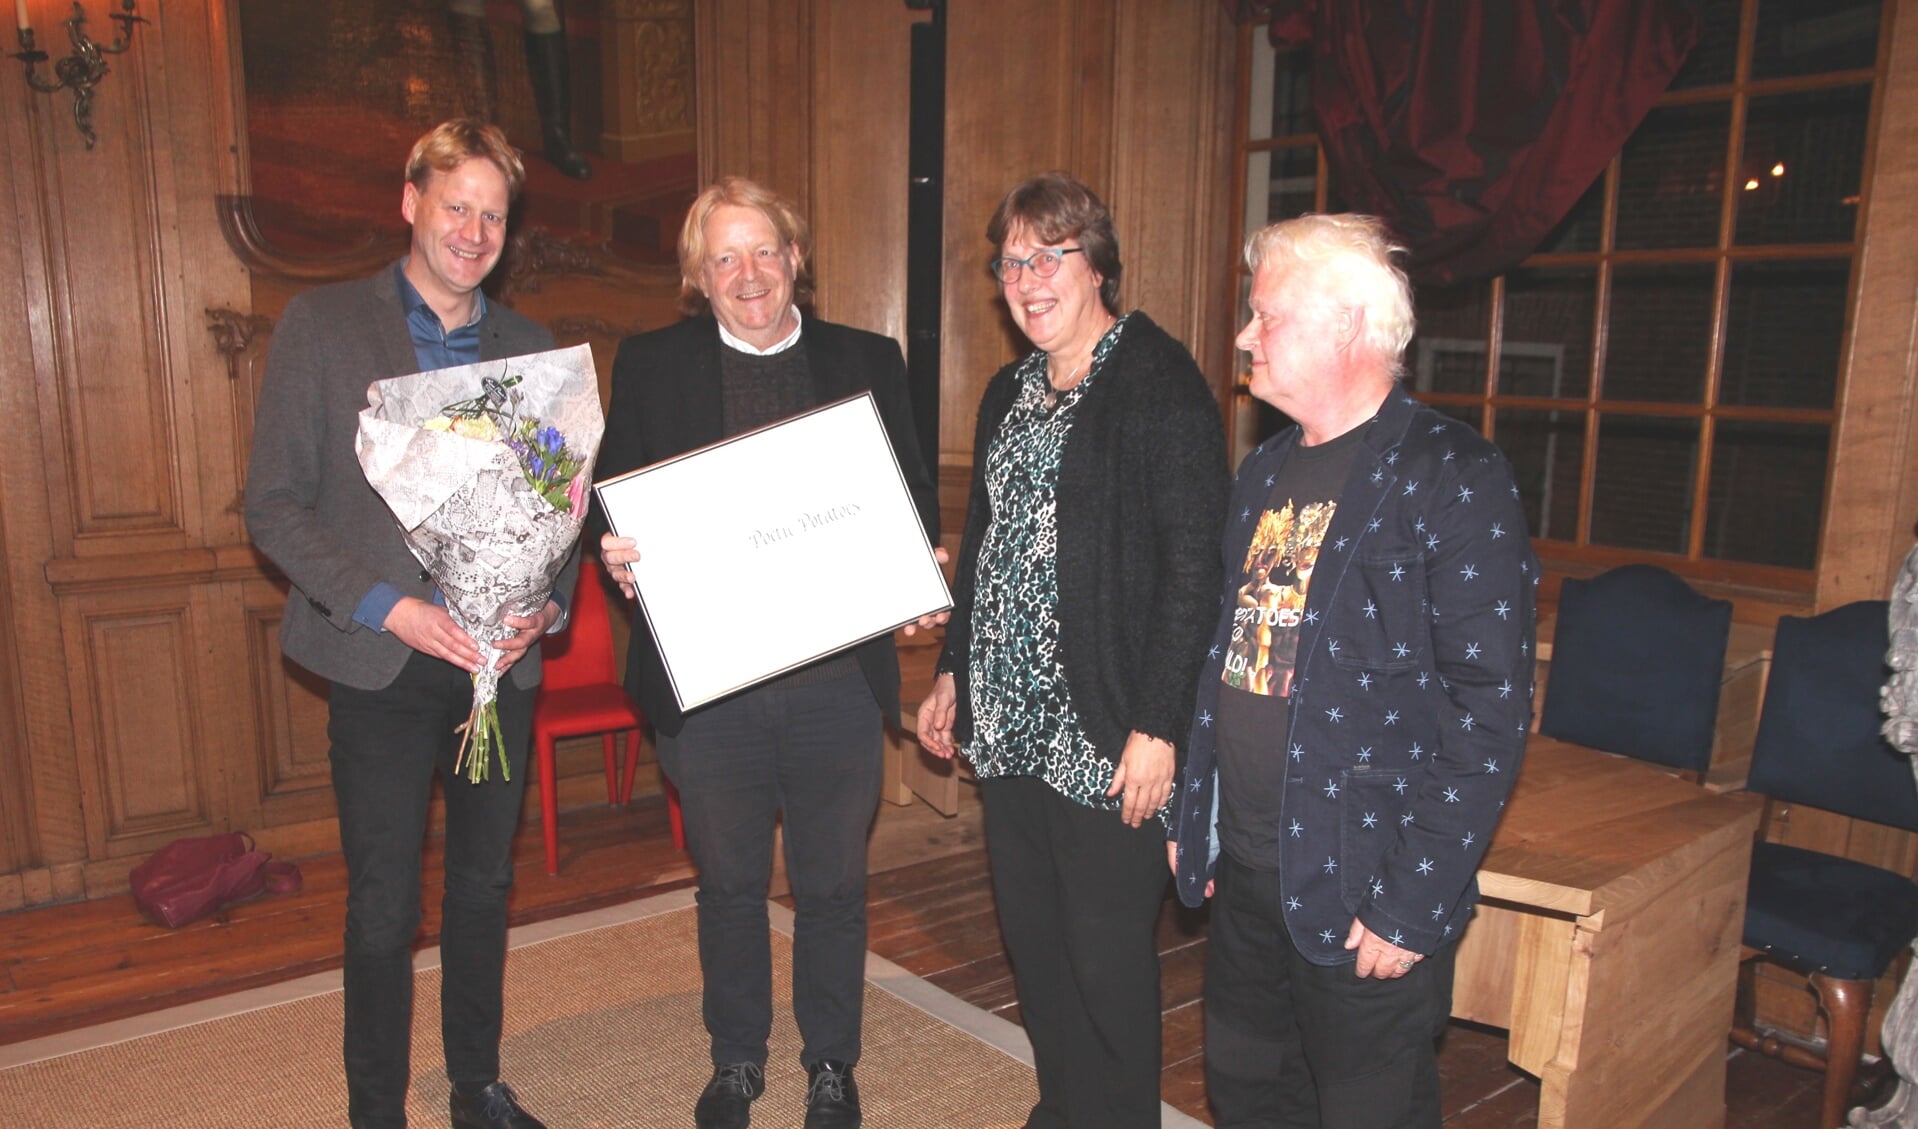 van links naar rechts wethouder Sjoerd Feitsma, juryvoorzitter Goffe Jensma en prijswinnaars Froukje de Jong en Loet Hin van de Stichting Bildtse Aardappelweken.